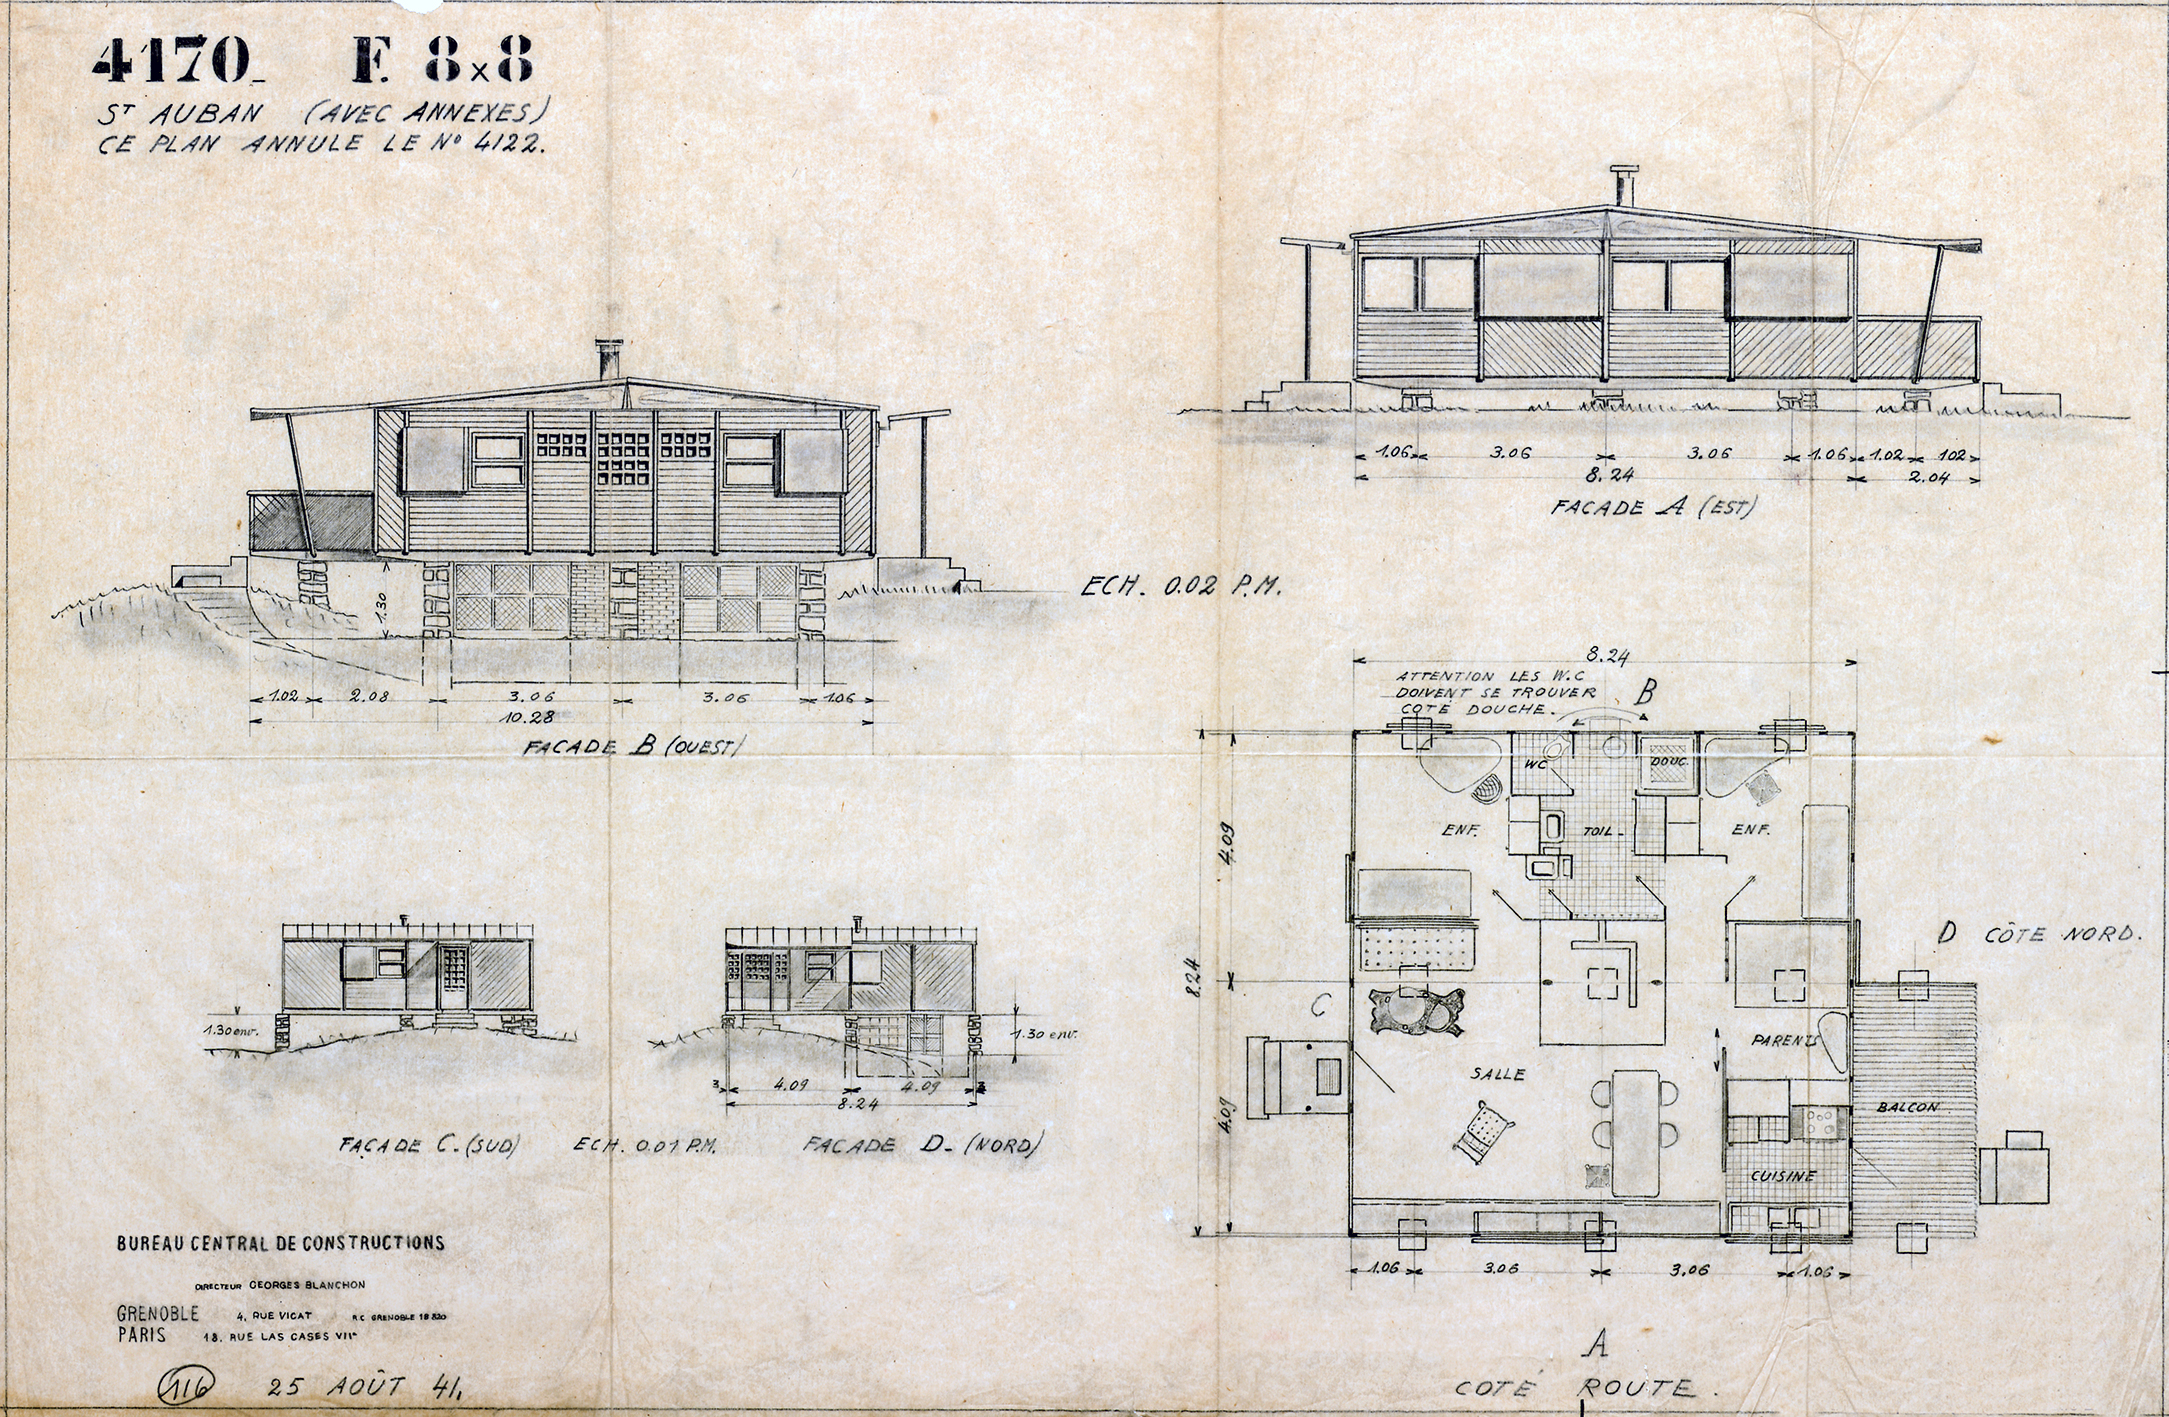 Bureau central de constructions. « F 8x8 St Auban (avec annexes) ». Plan n° 4170, 25 août 1941.